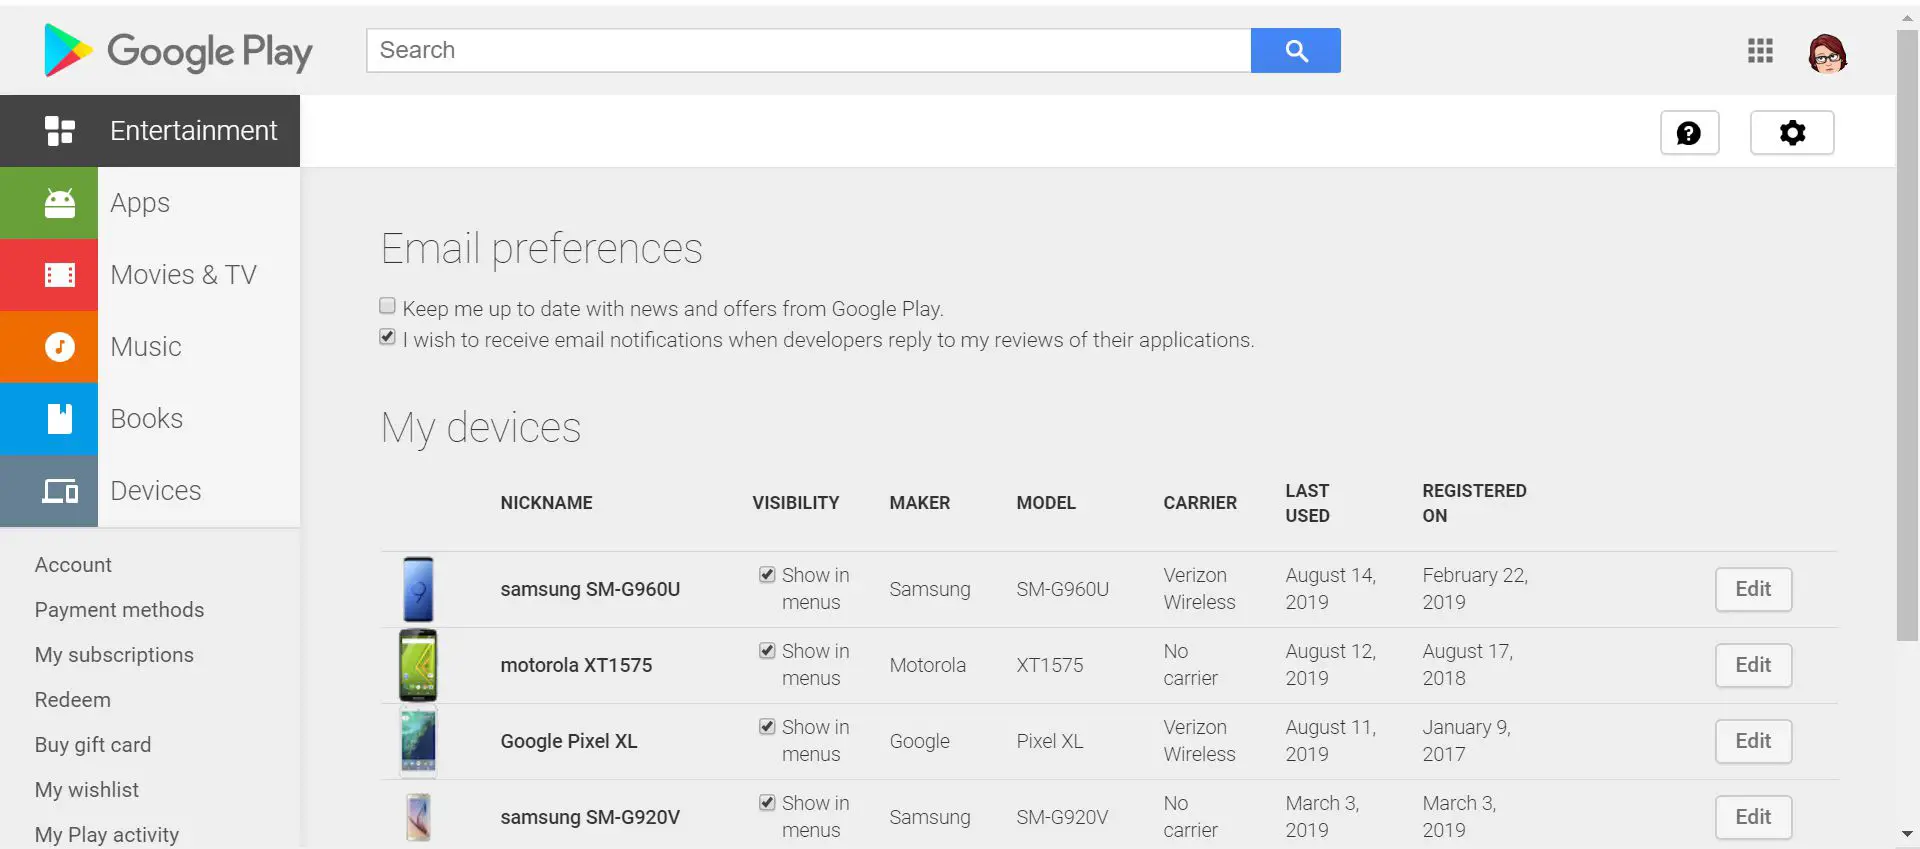 Configurações de visibilidade do dispositivo da Google Play Store.